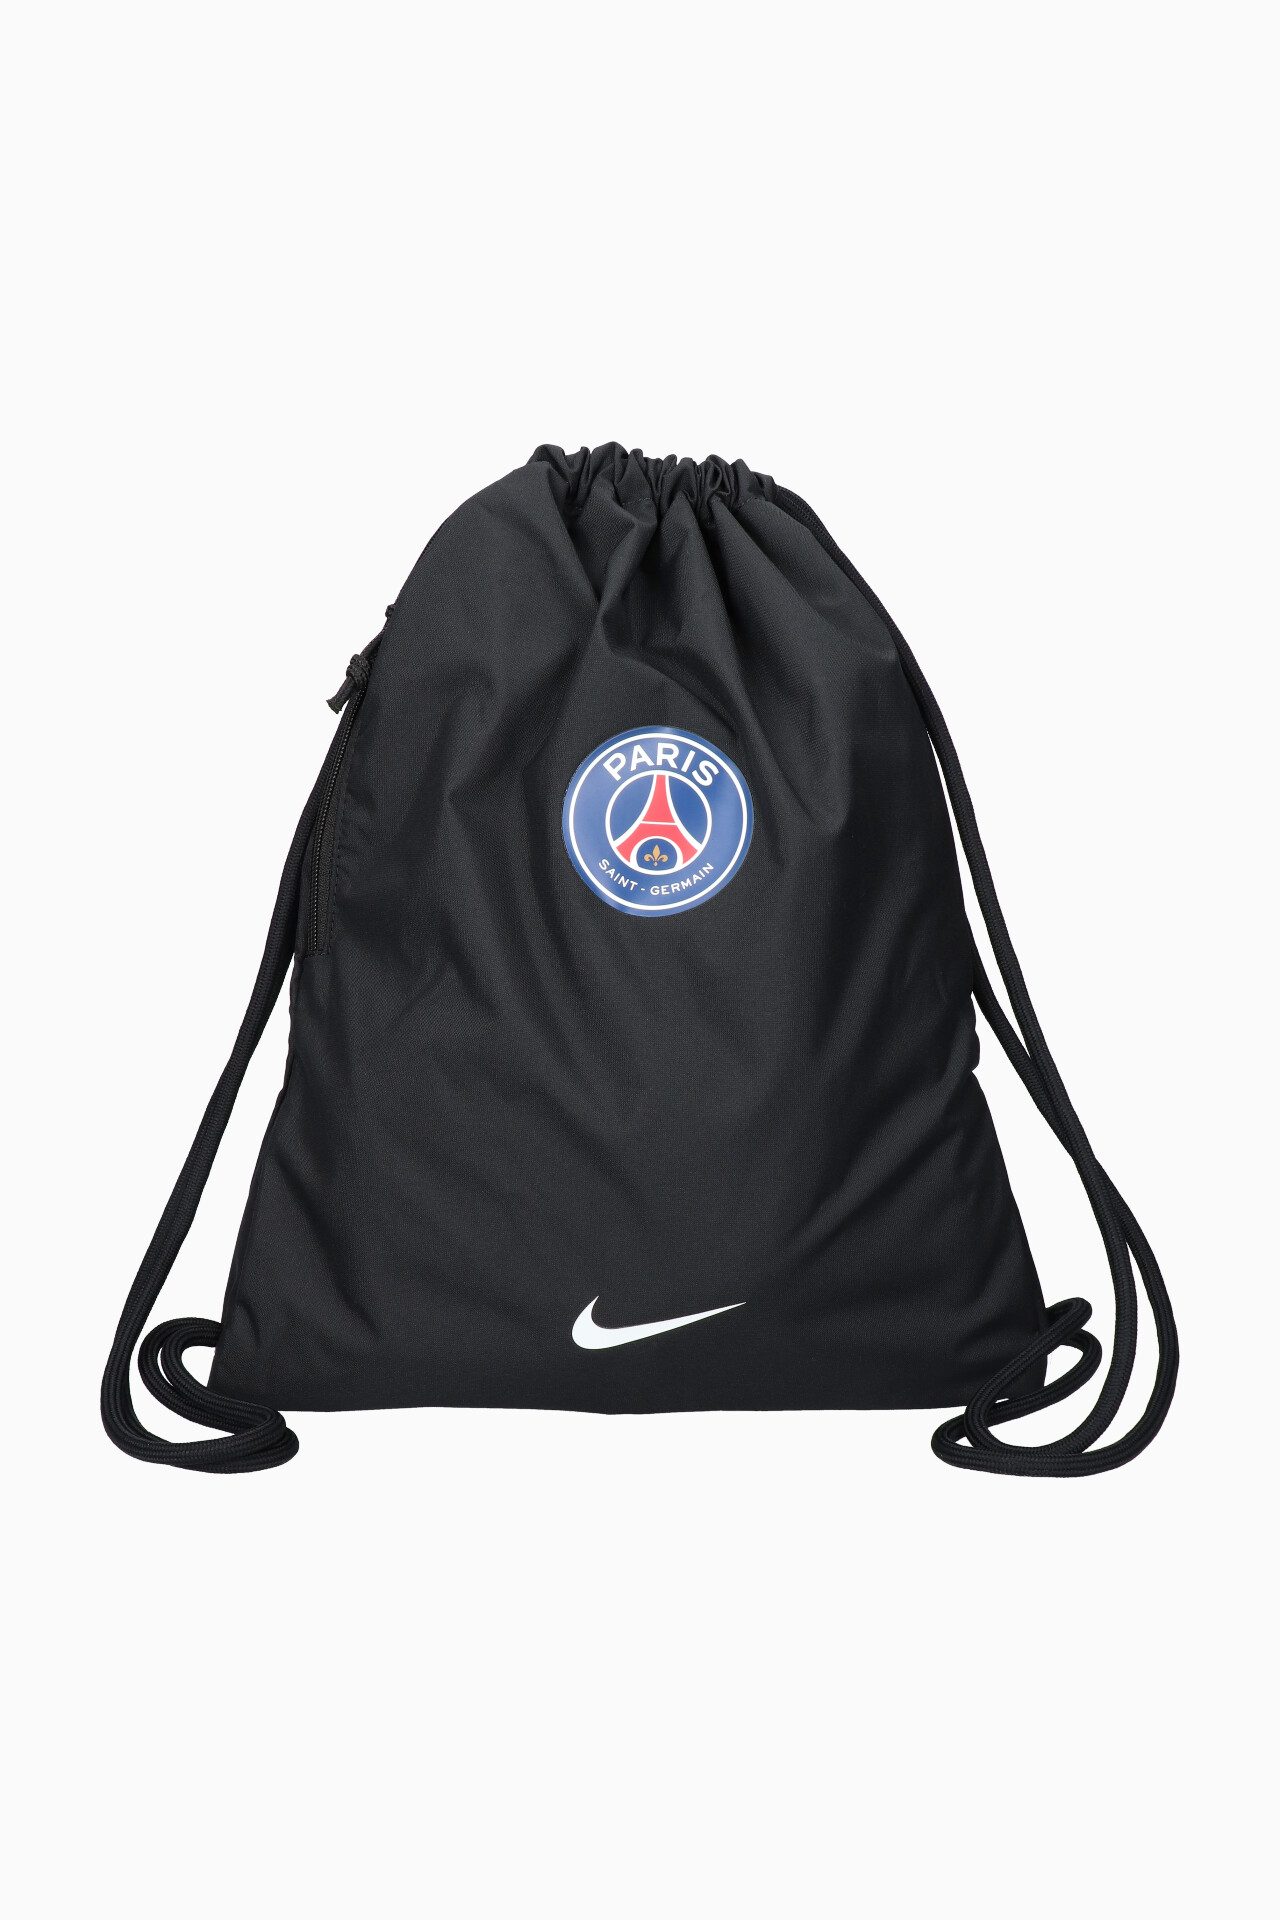 Paris Saint Germain FC Gym Bag 